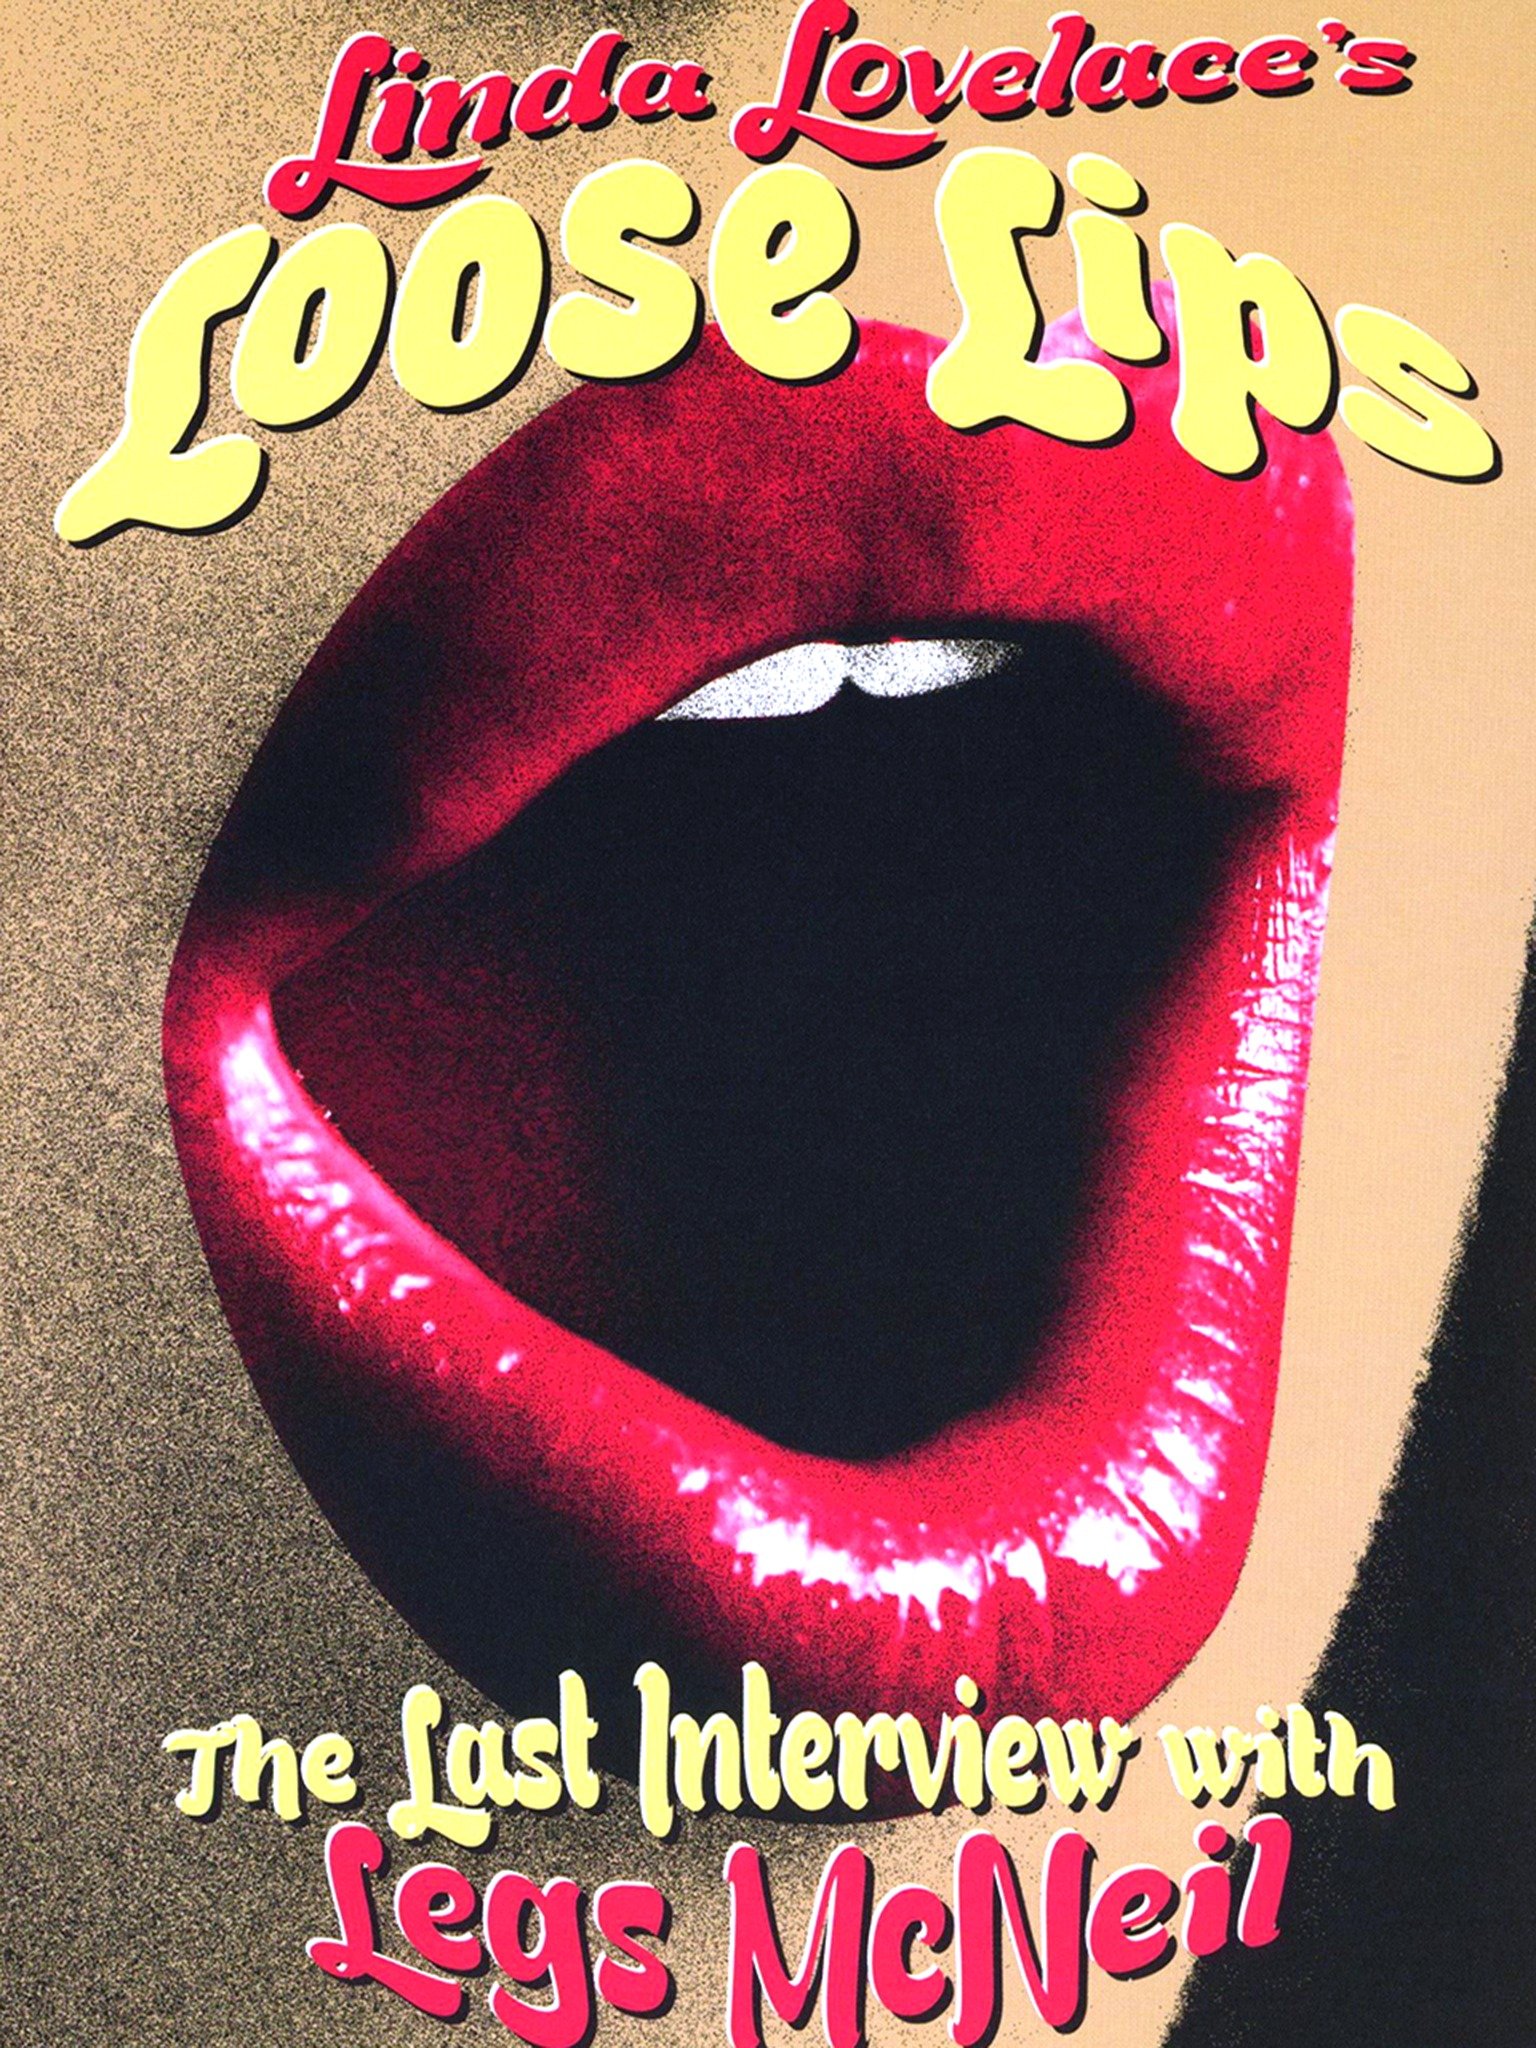 Linda Lovelaces Loose Lips photo